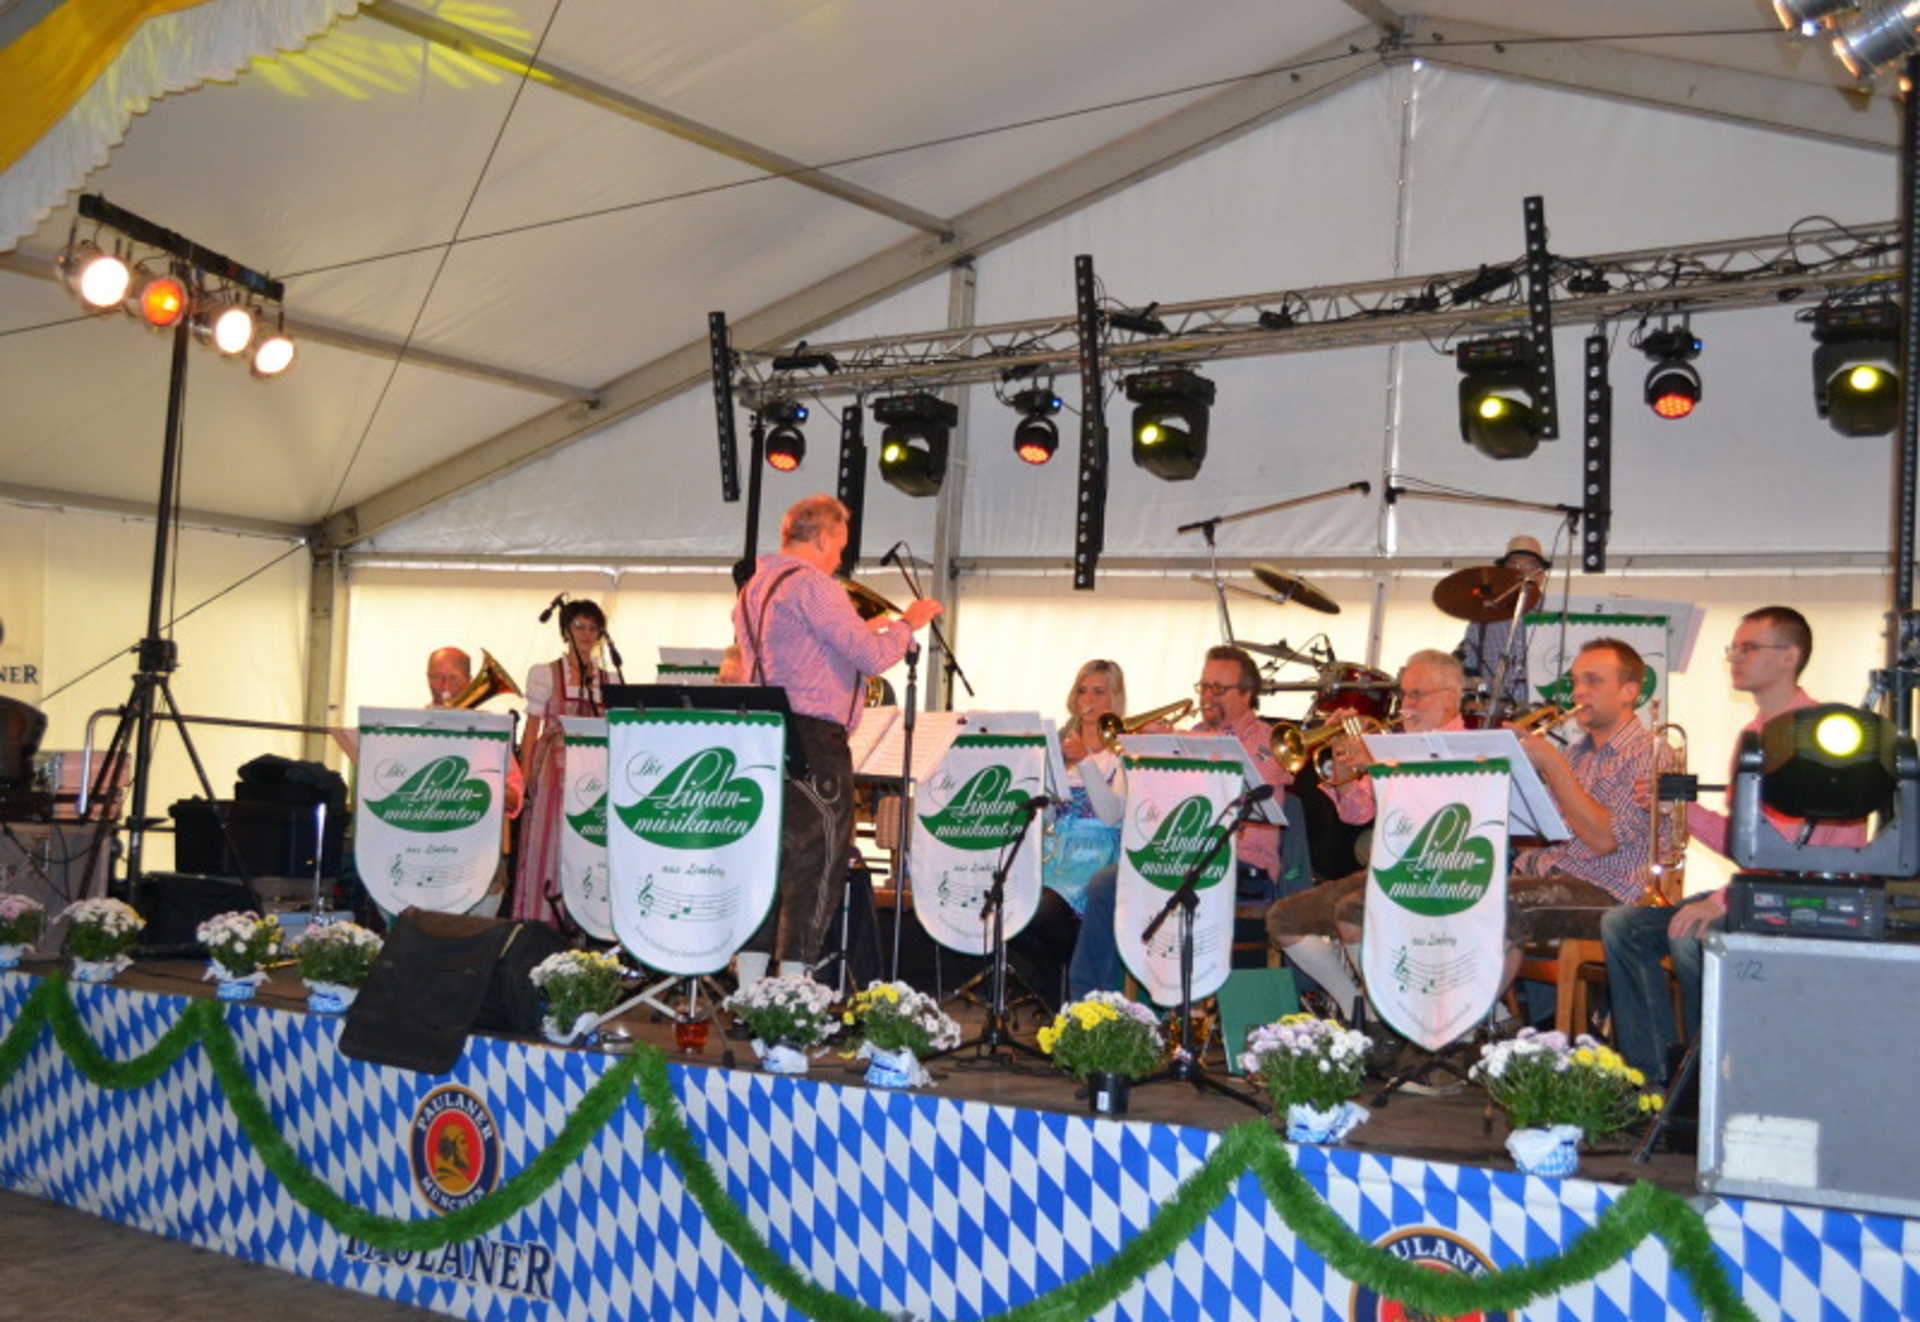 Die Limberger Lindenmusikanten beim Oktoberfest in Stradow - Foto: Heimatverein Stradow Spreewald e.V.